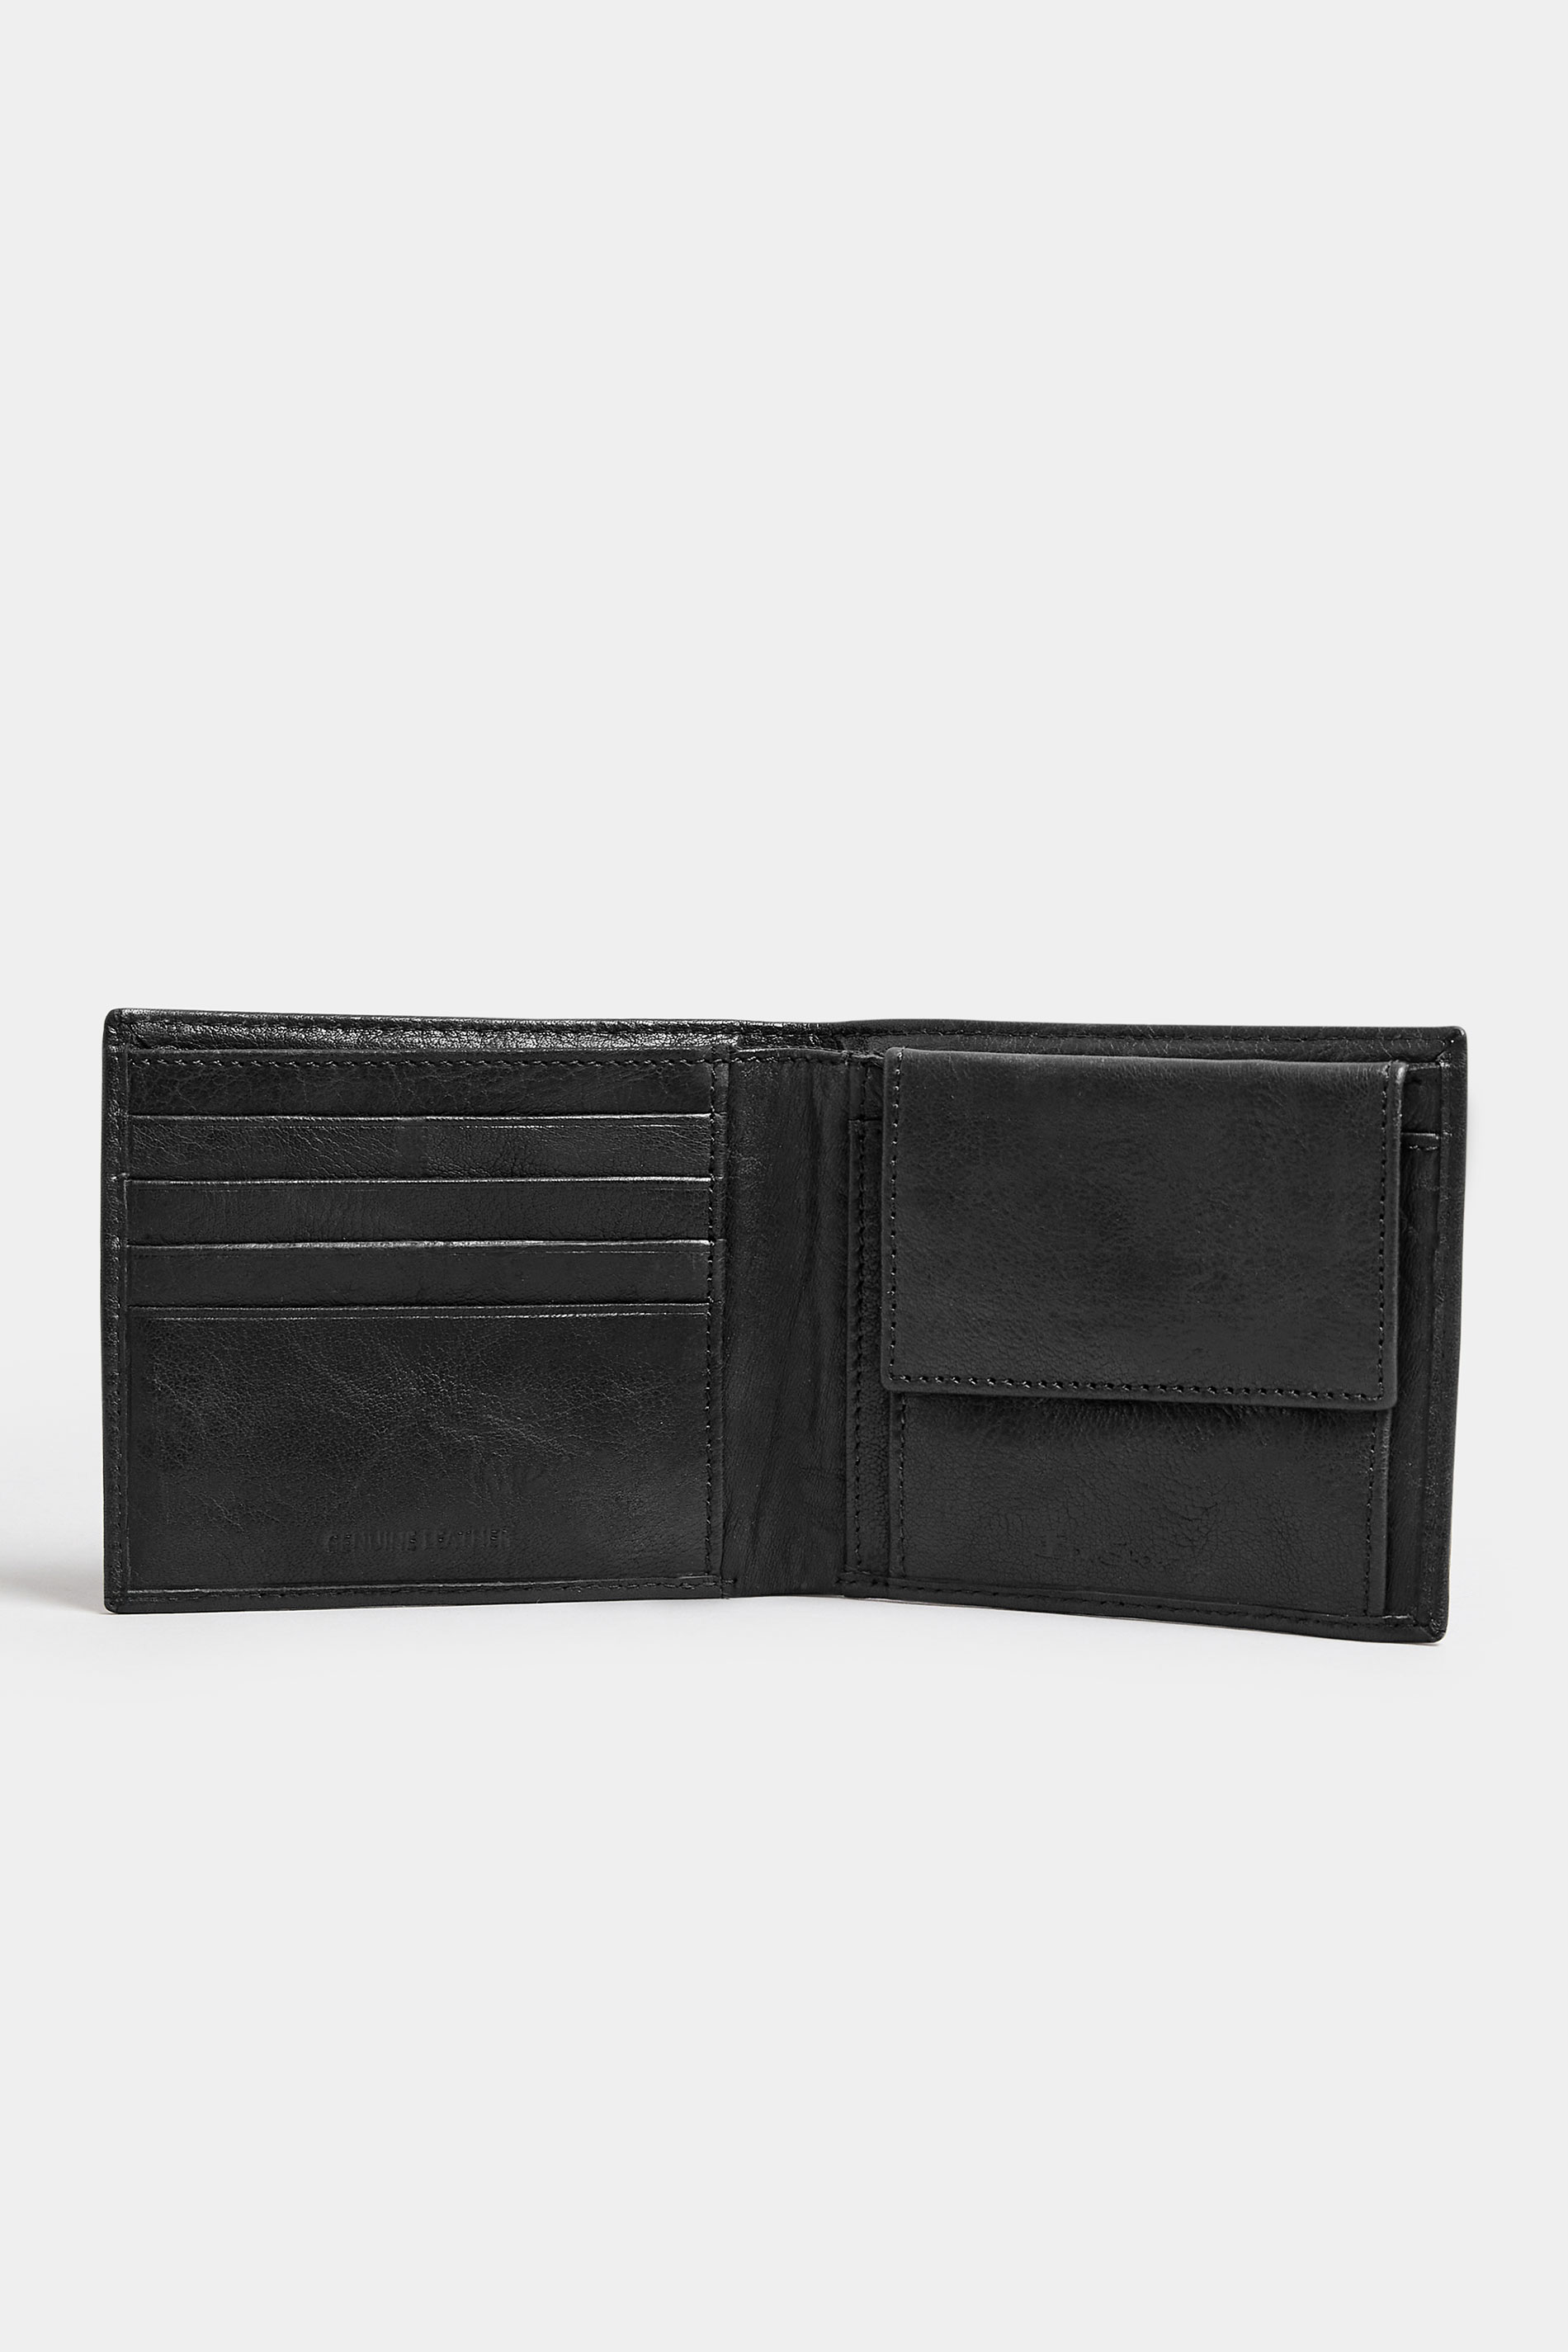 BEN SHERMAN Black Leather 'Wilder' Bi-Fold Wallet | BadRhino 2